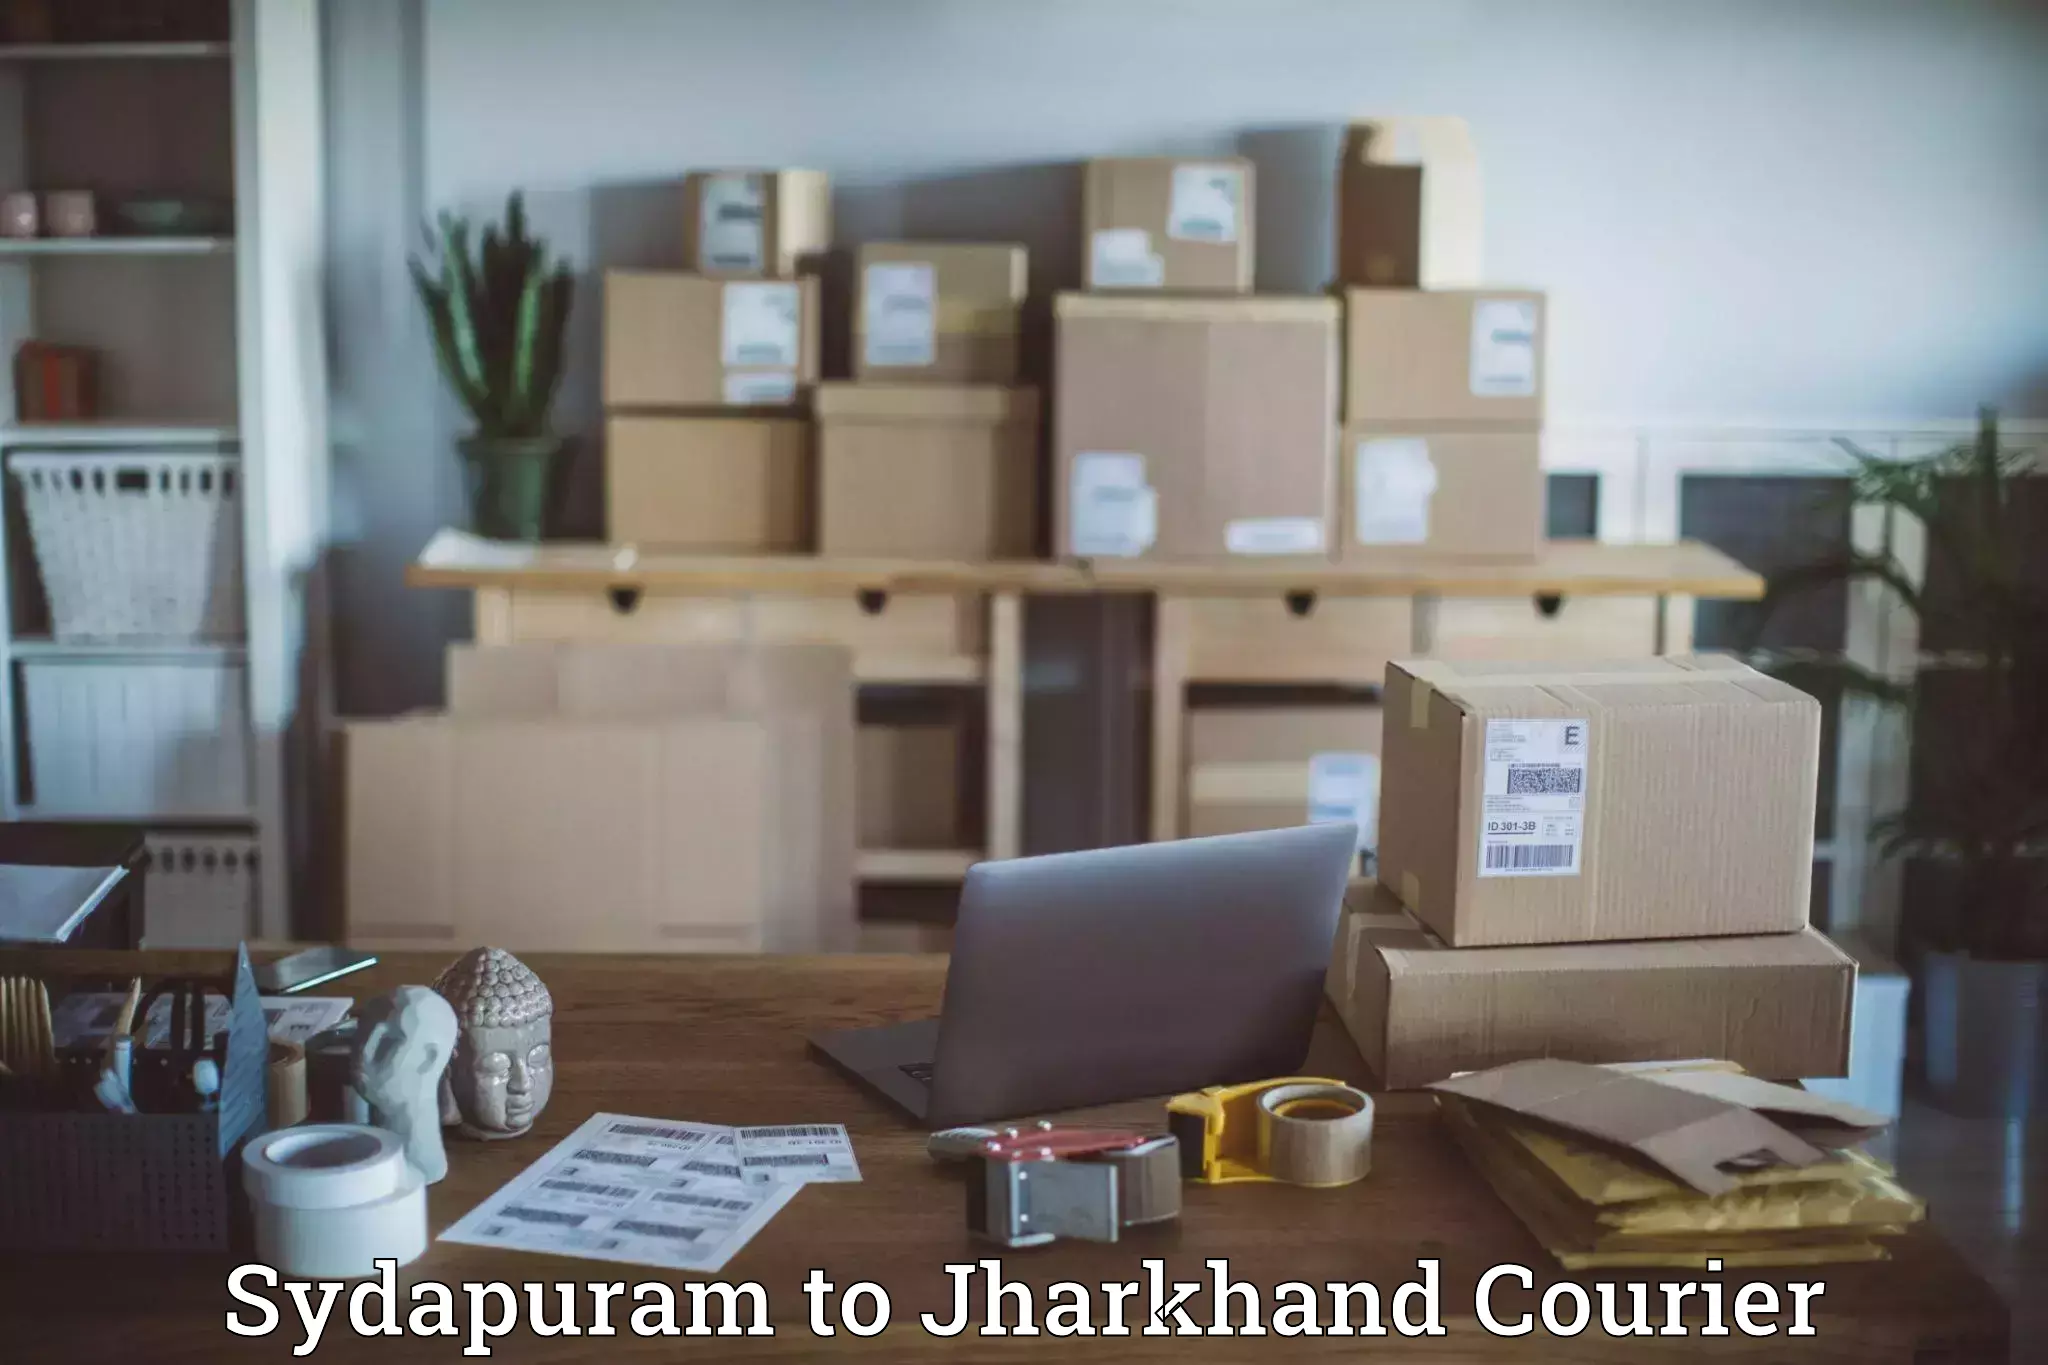 Premium courier services Sydapuram to Rajdhanwar